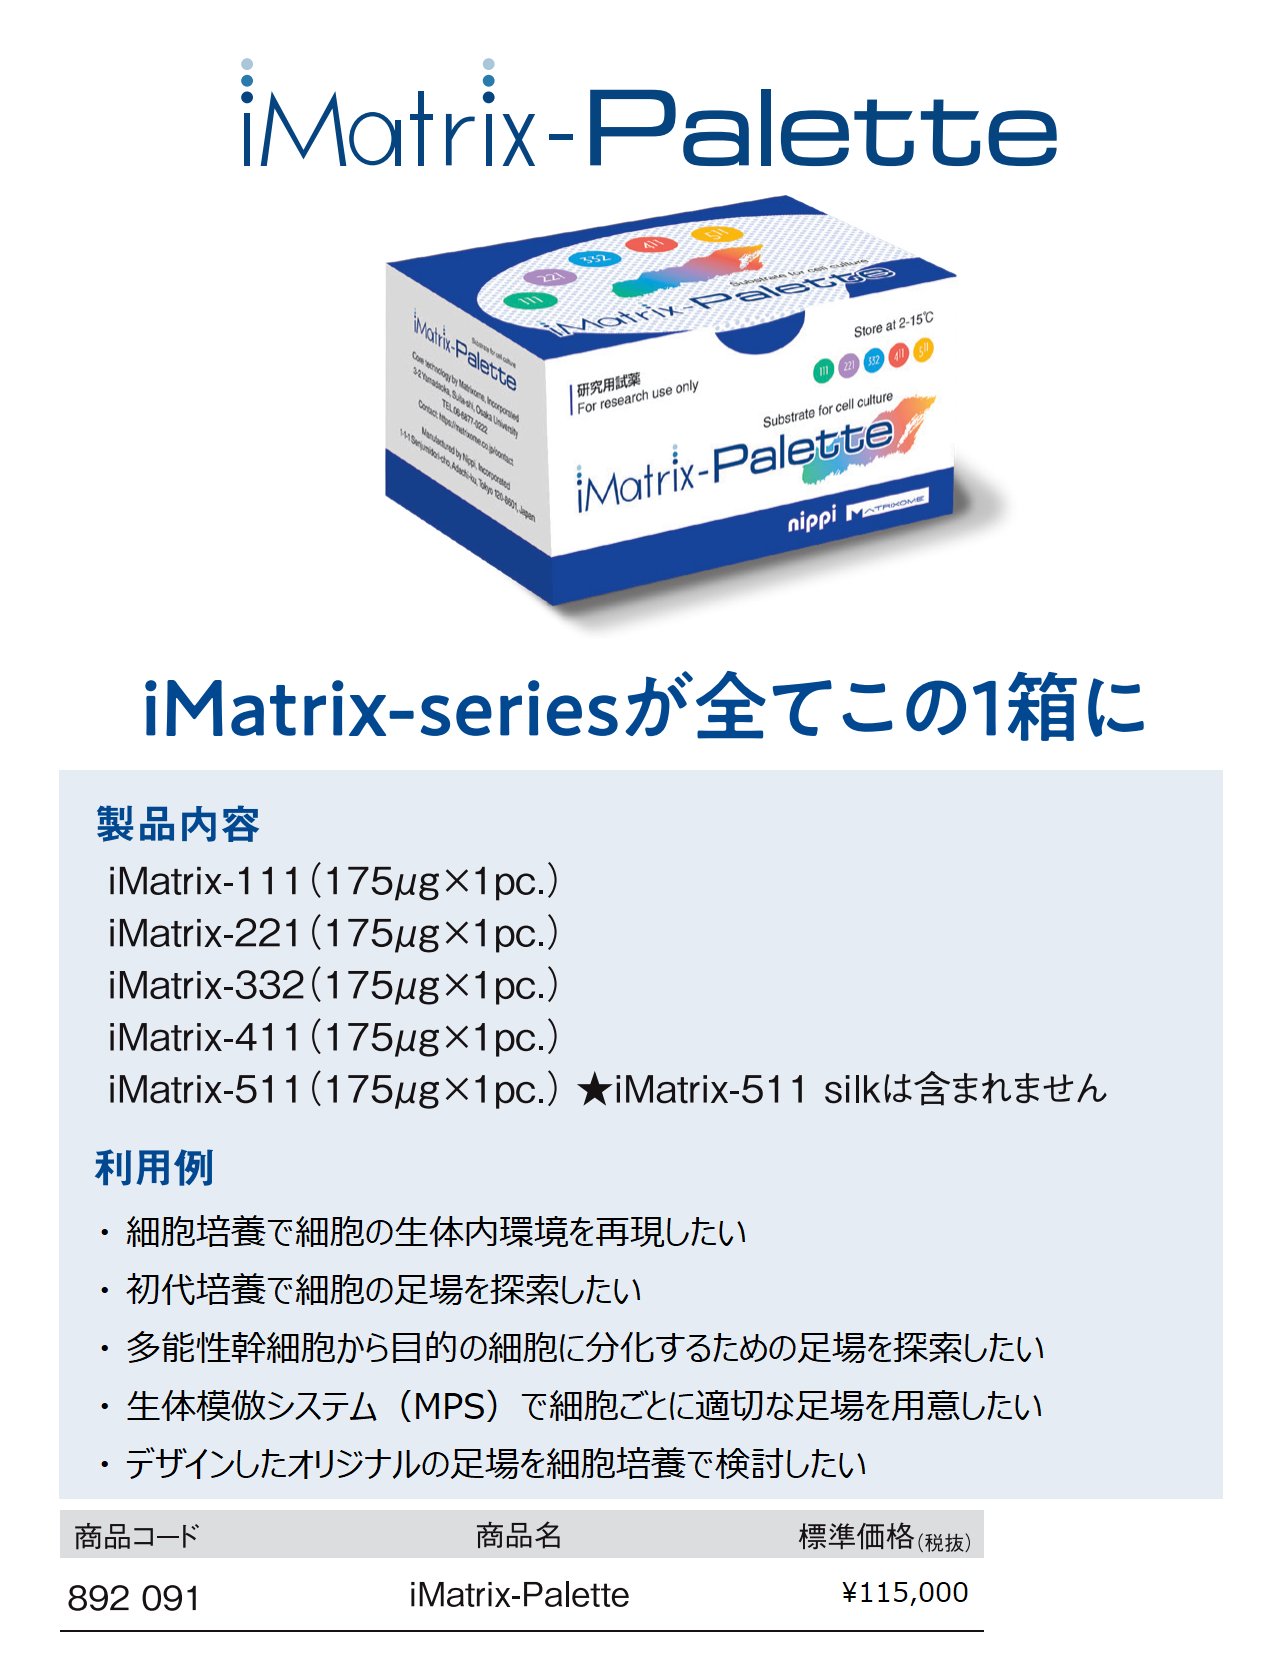 iMatrix-Palette